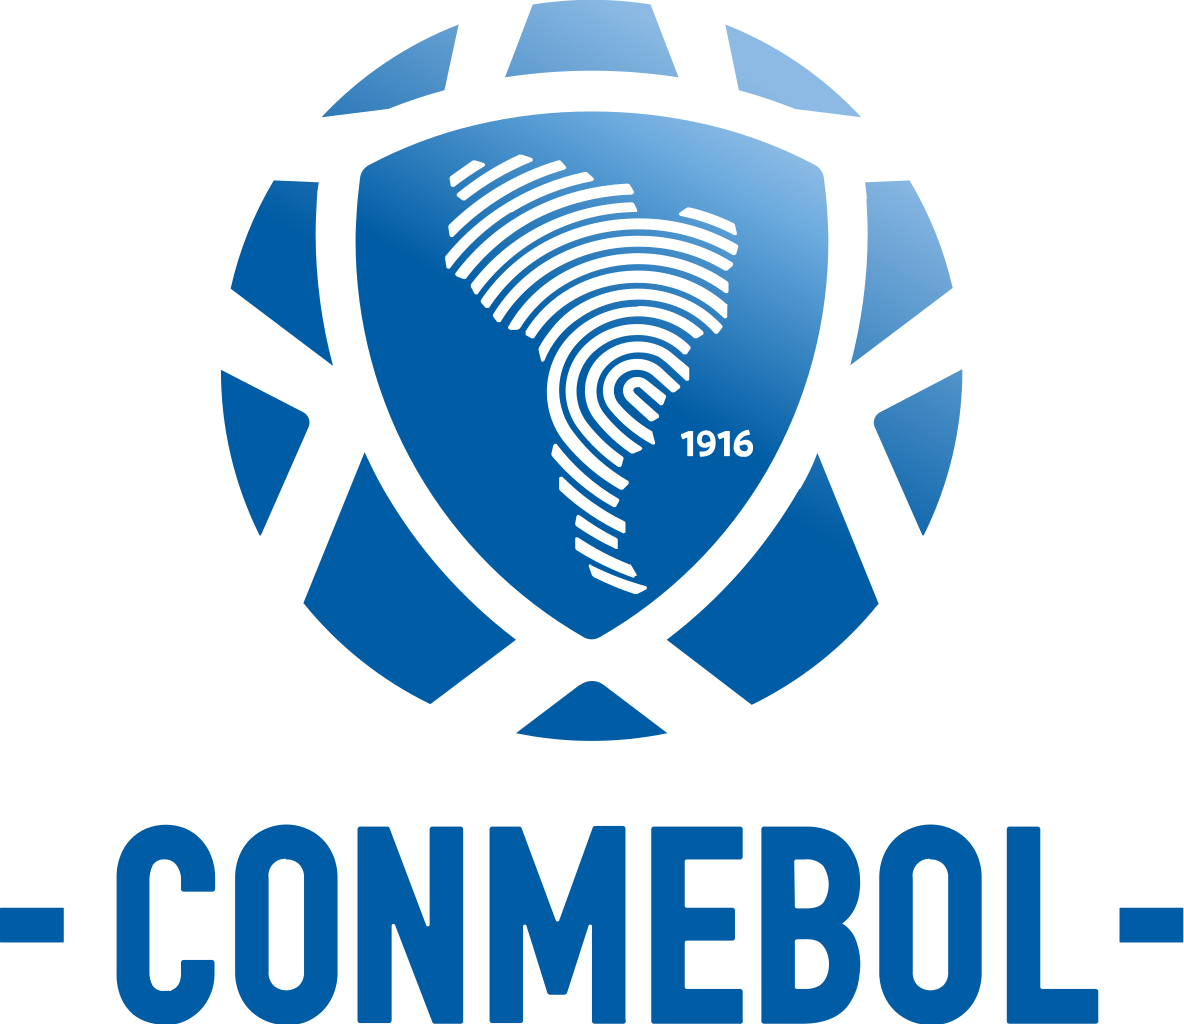 CONMEBOL Football Wiki FANDOM powered by Wikia